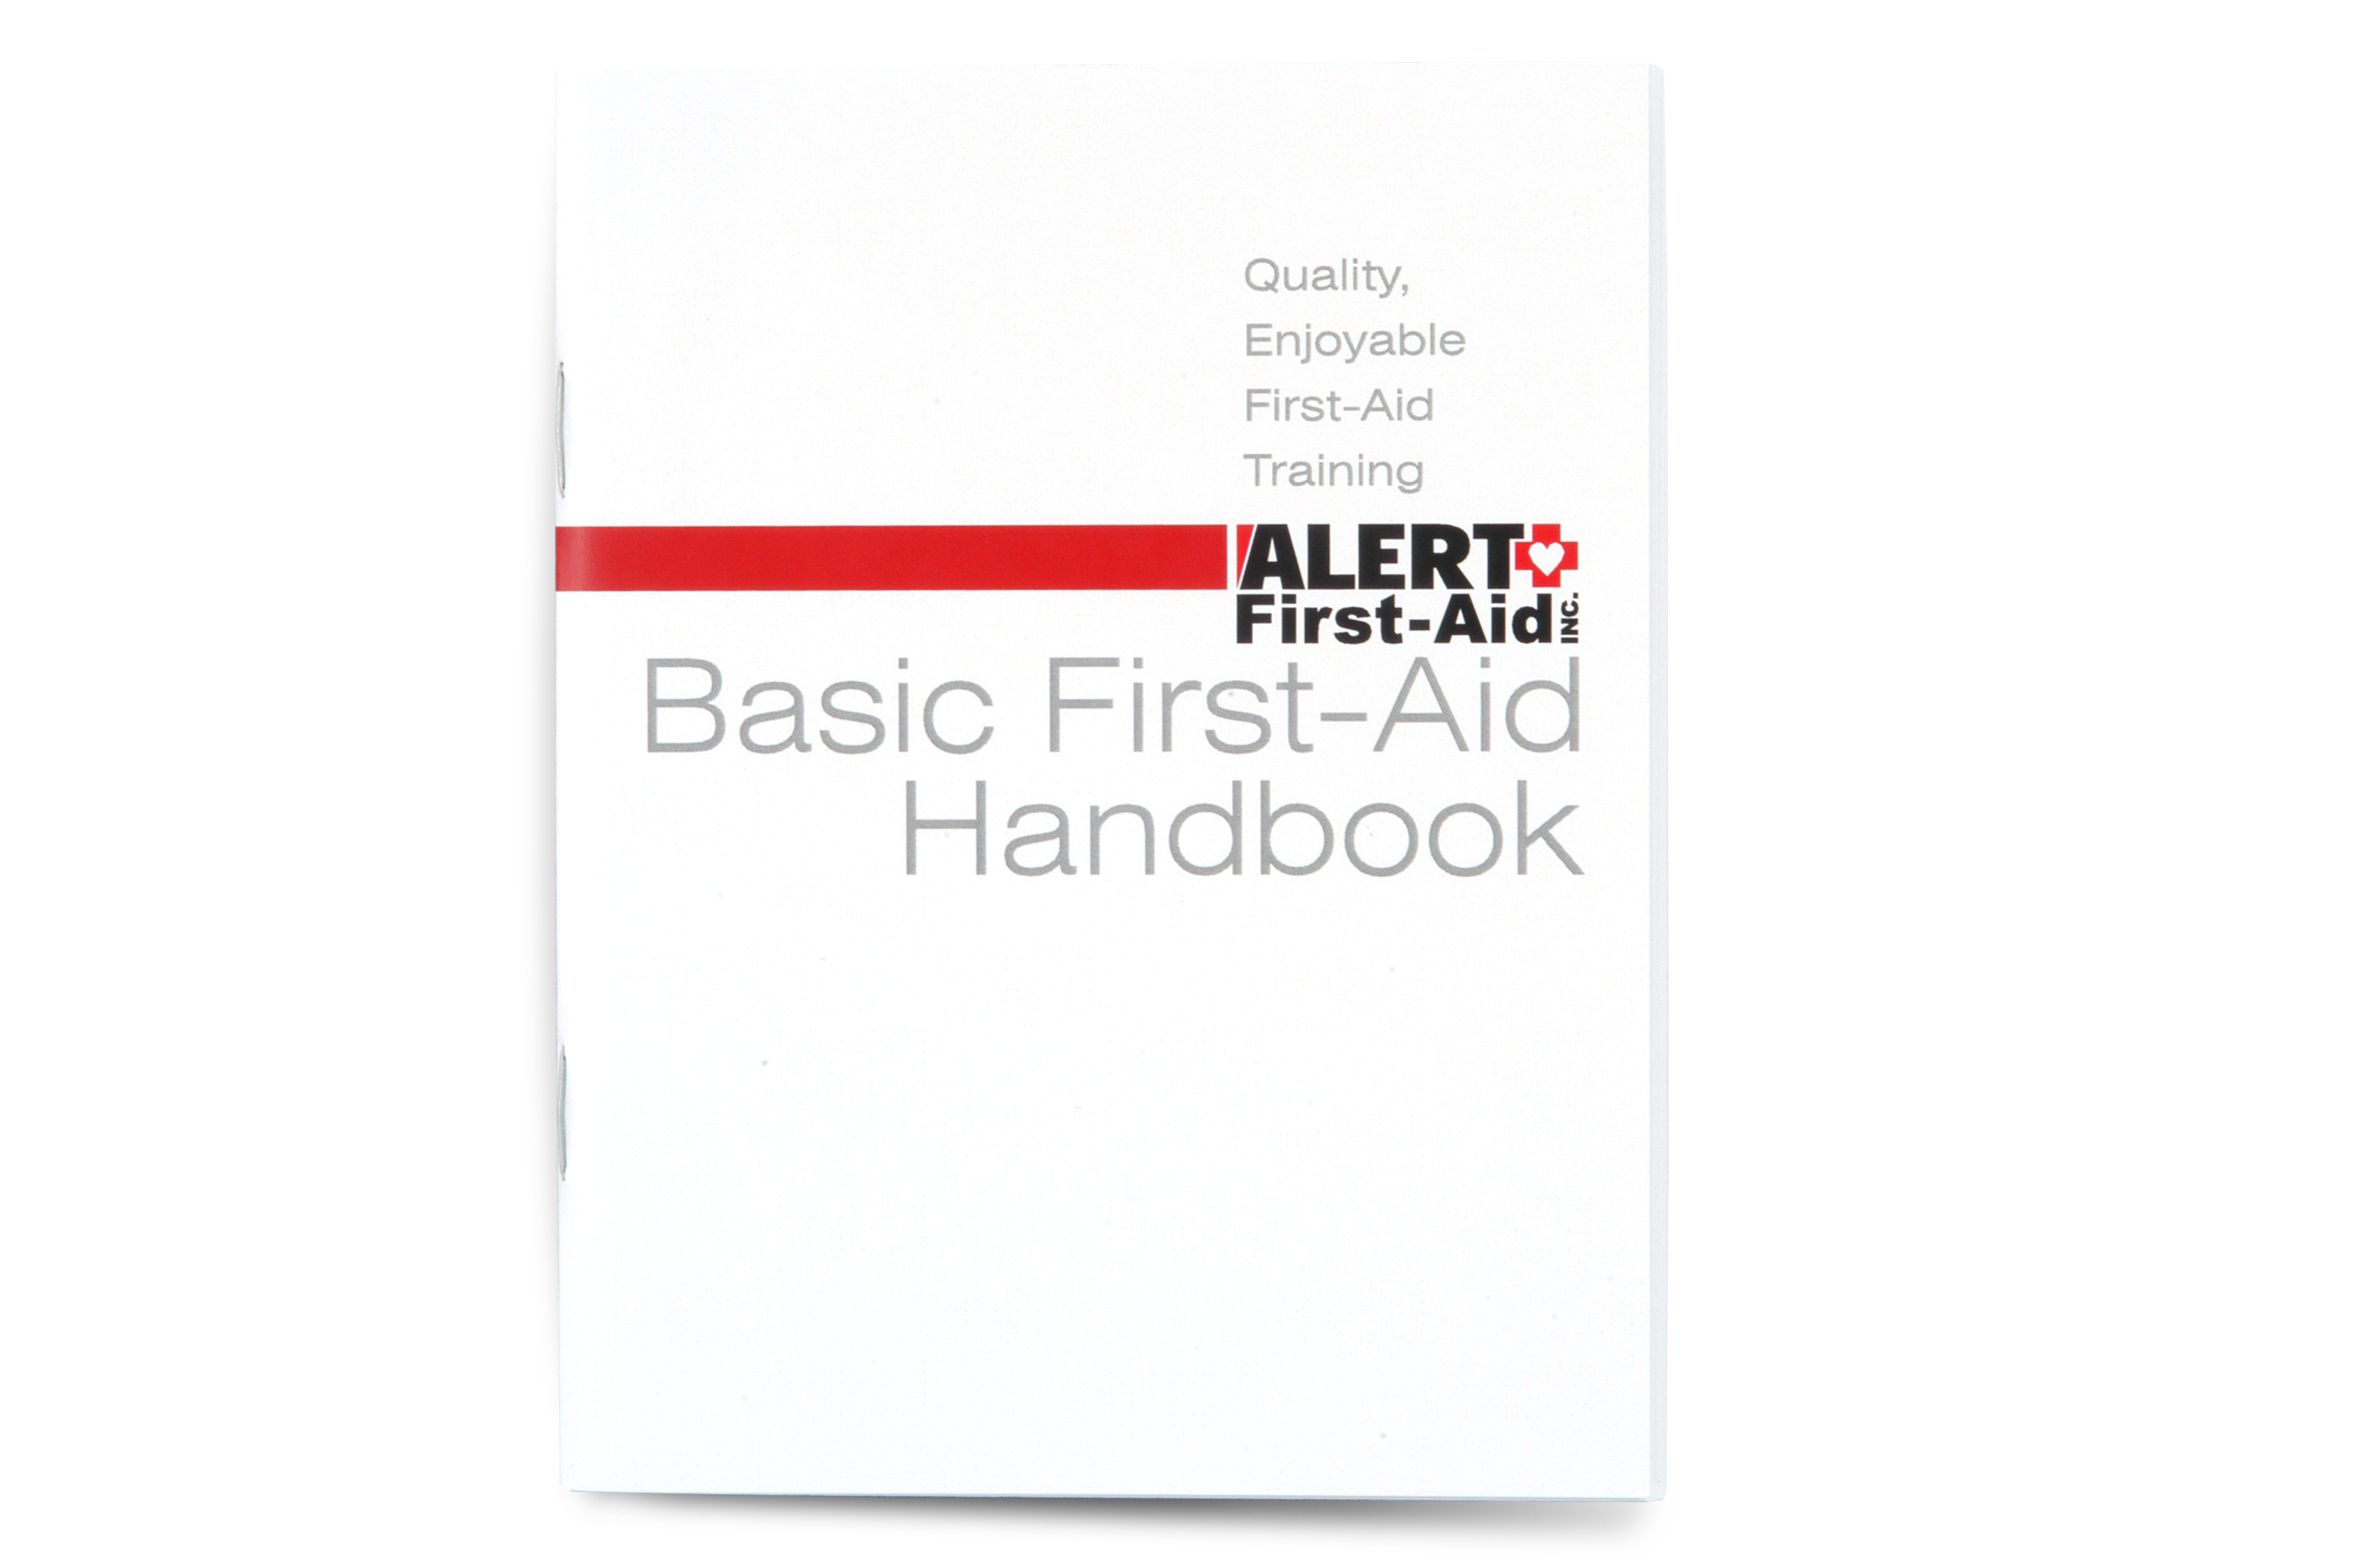 Basic First-Aid Handbook